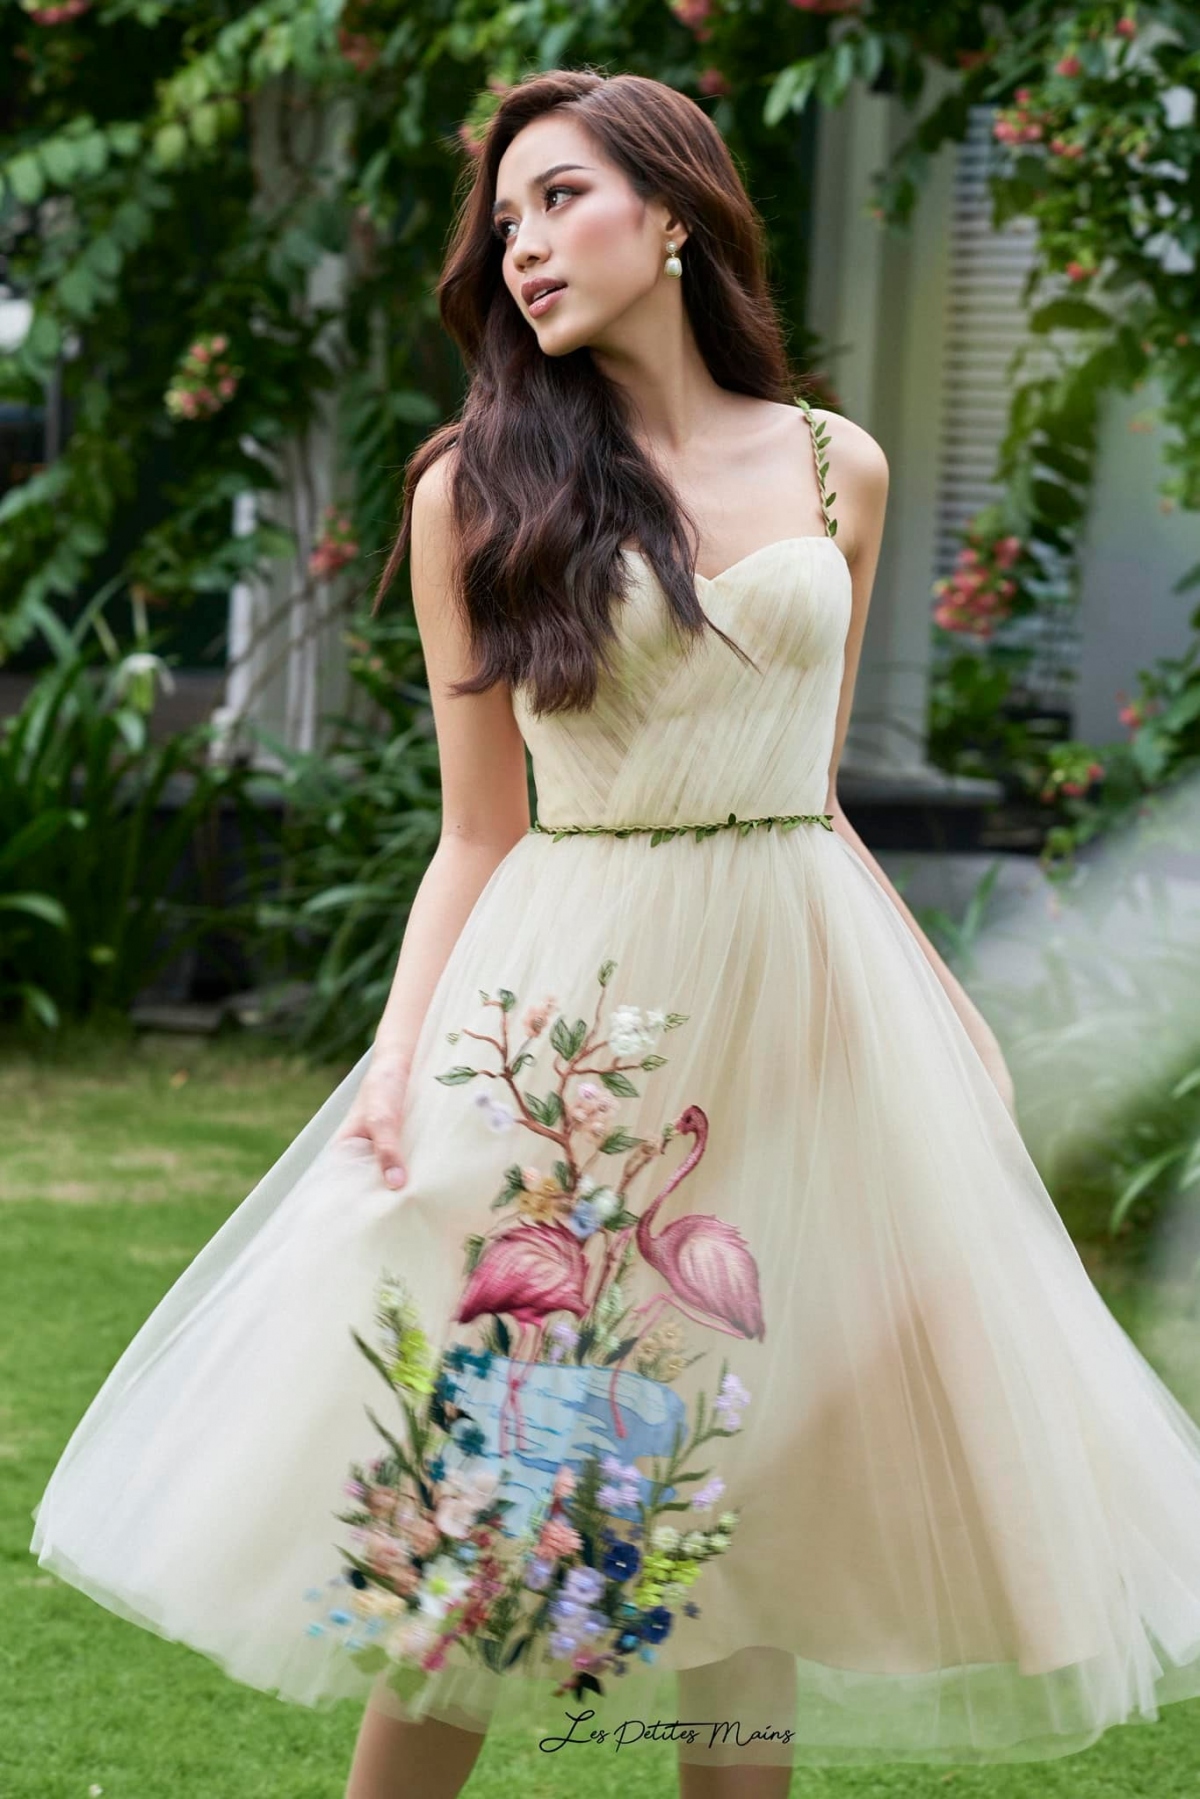 Hoa hậu Đỗ Thị Hà ngọt ngào, quyến rũ với sắc trắng tinh khôi - Ảnh 5.